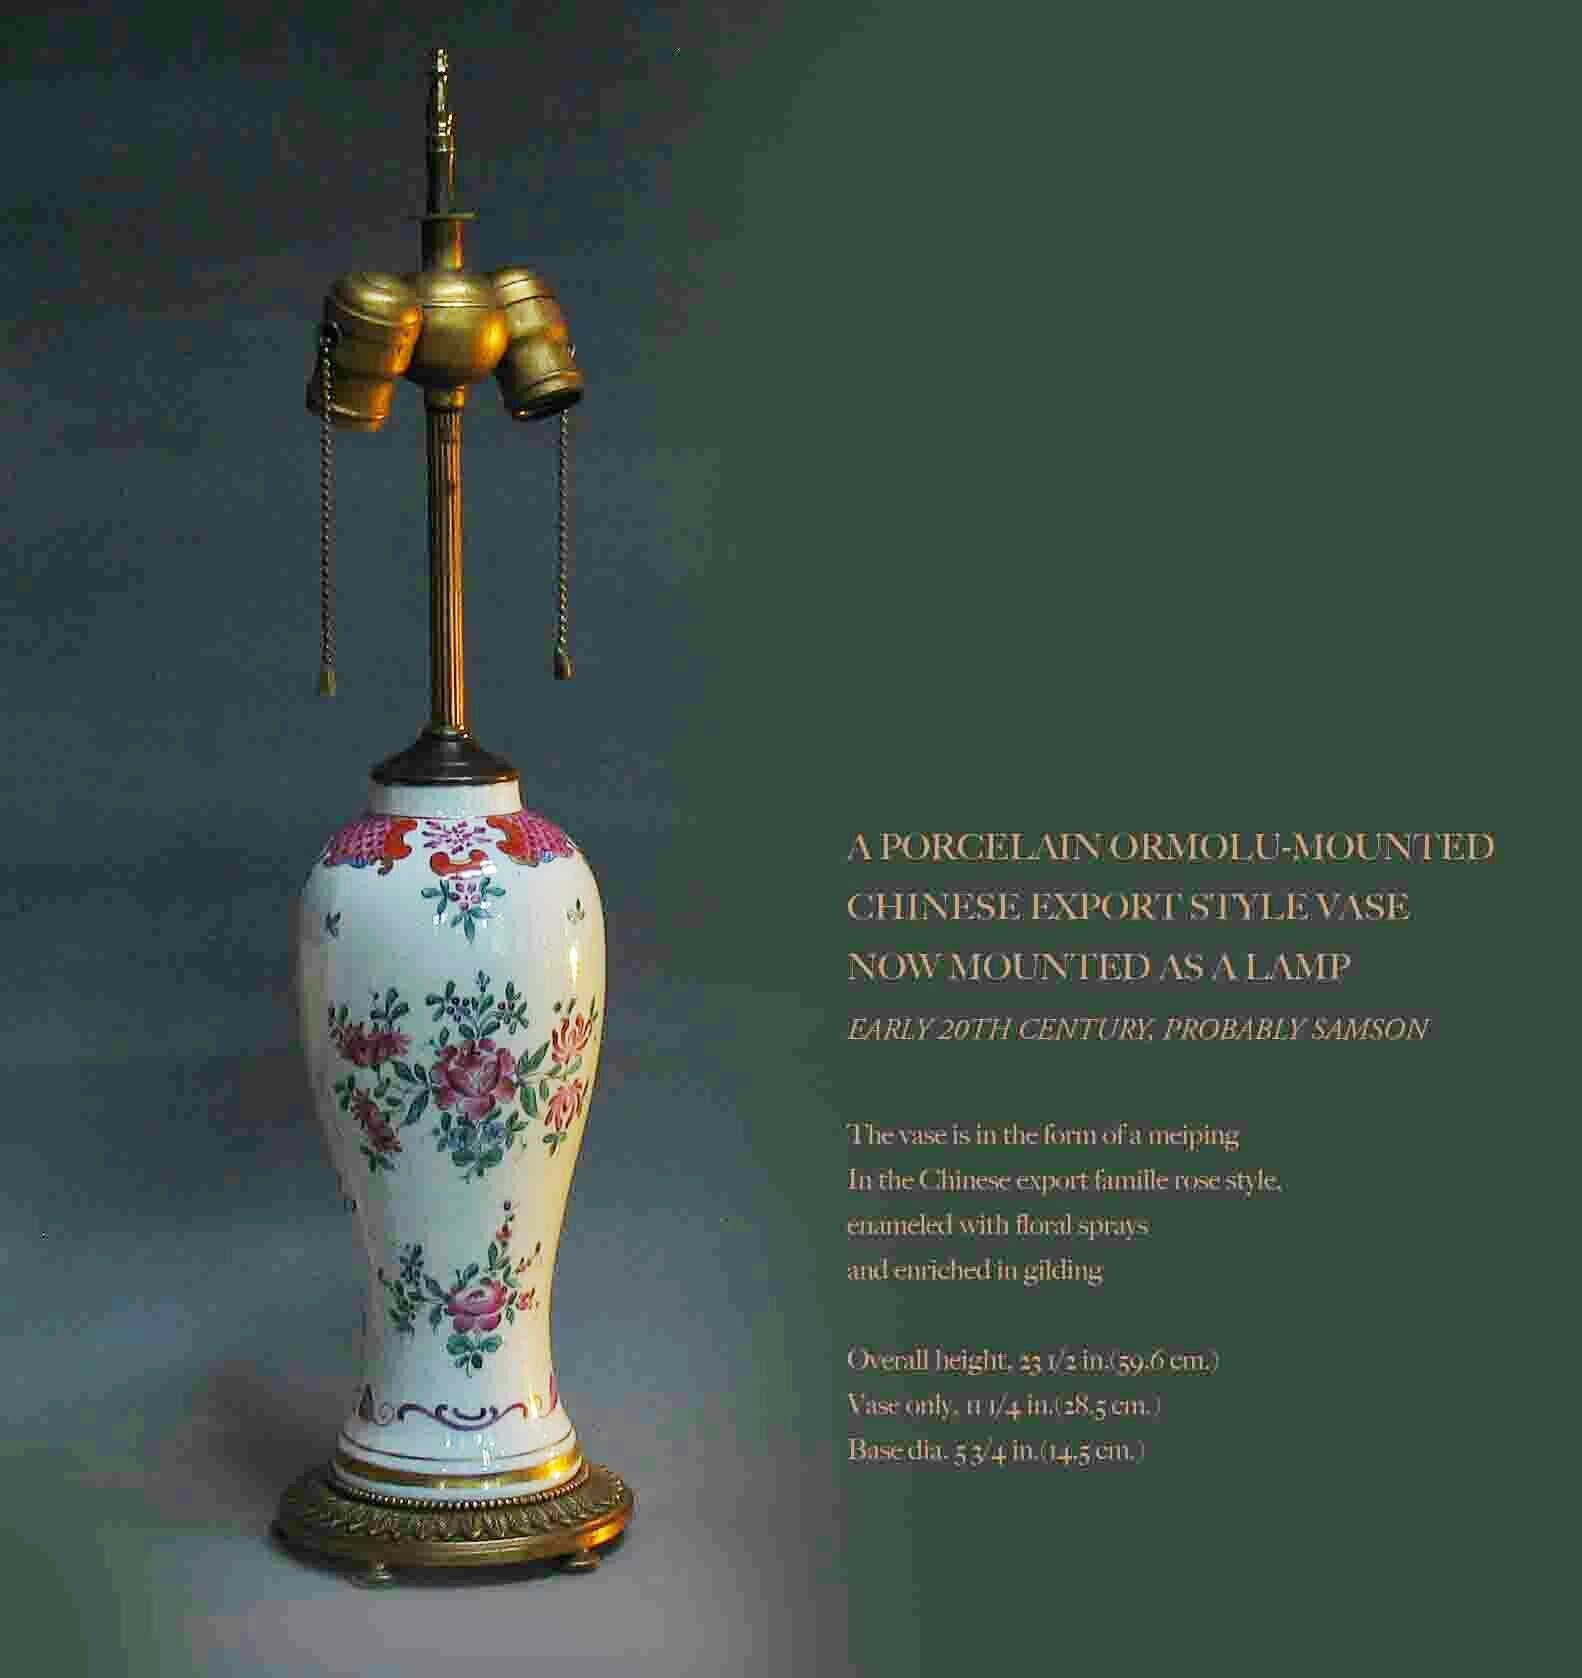 Ein in Porzellan oder Gold gefasstes
Vase im chinesischen Exportstil
Jetzt als Lampe montiert
Anfang des 20. Jahrhunderts, wahrscheinlich Samson

Die Vase hat die Form eines Meipings
Im Stil der chinesischen Exportfamilie Rose,
emailliert mit